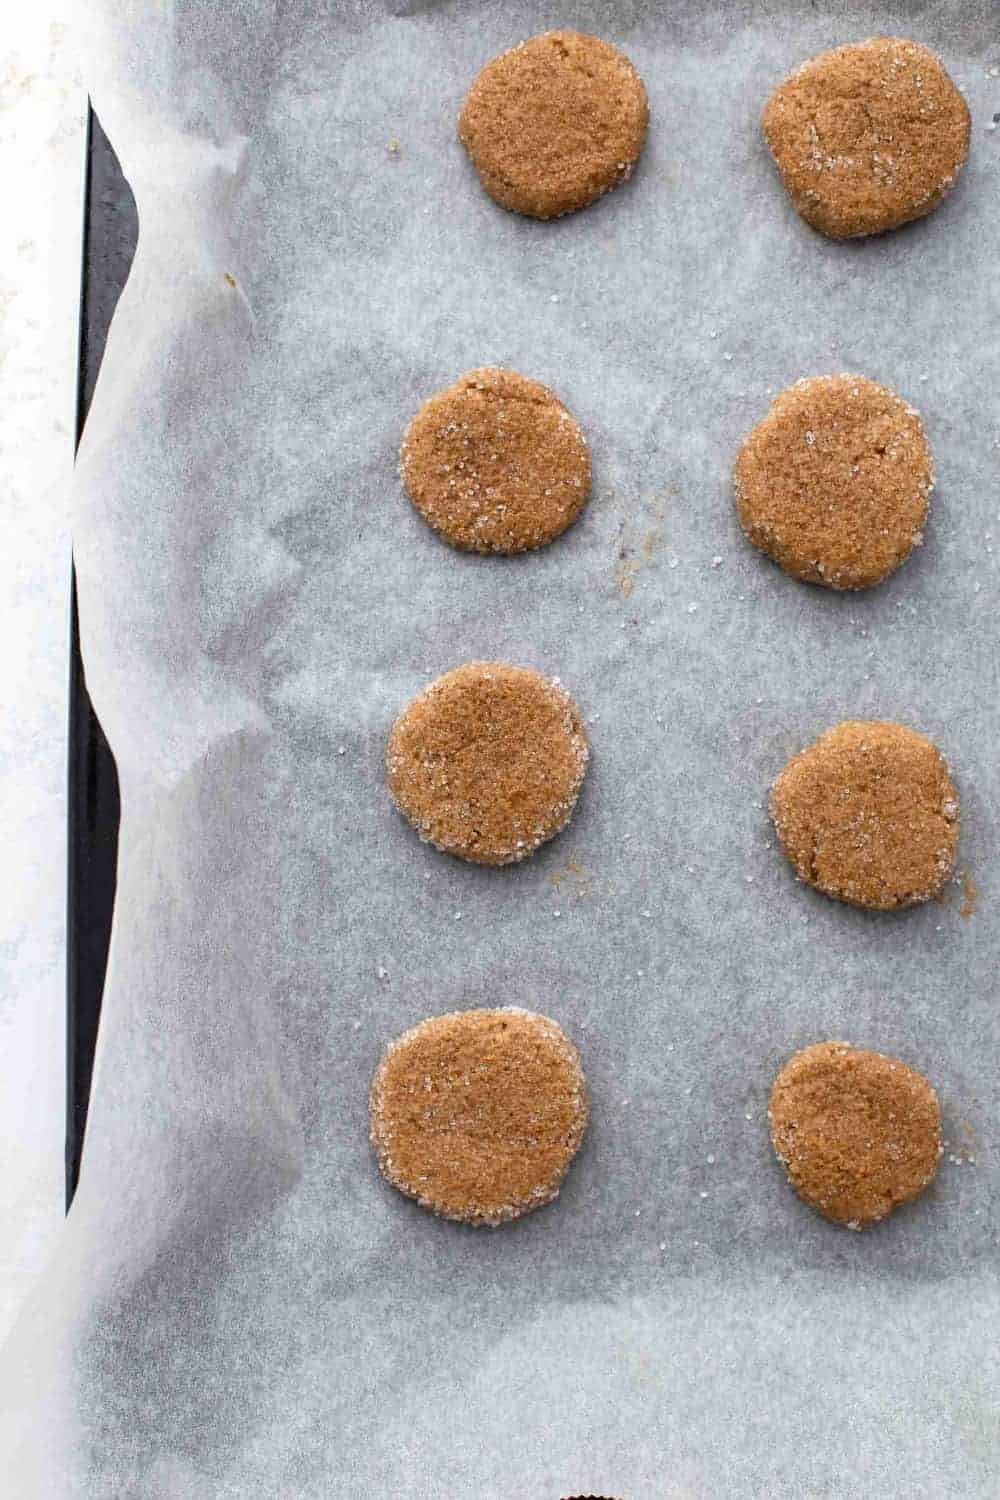  baller Av Gresskar melasse cookie dough rullet i sukker, klar til å bli bakt 